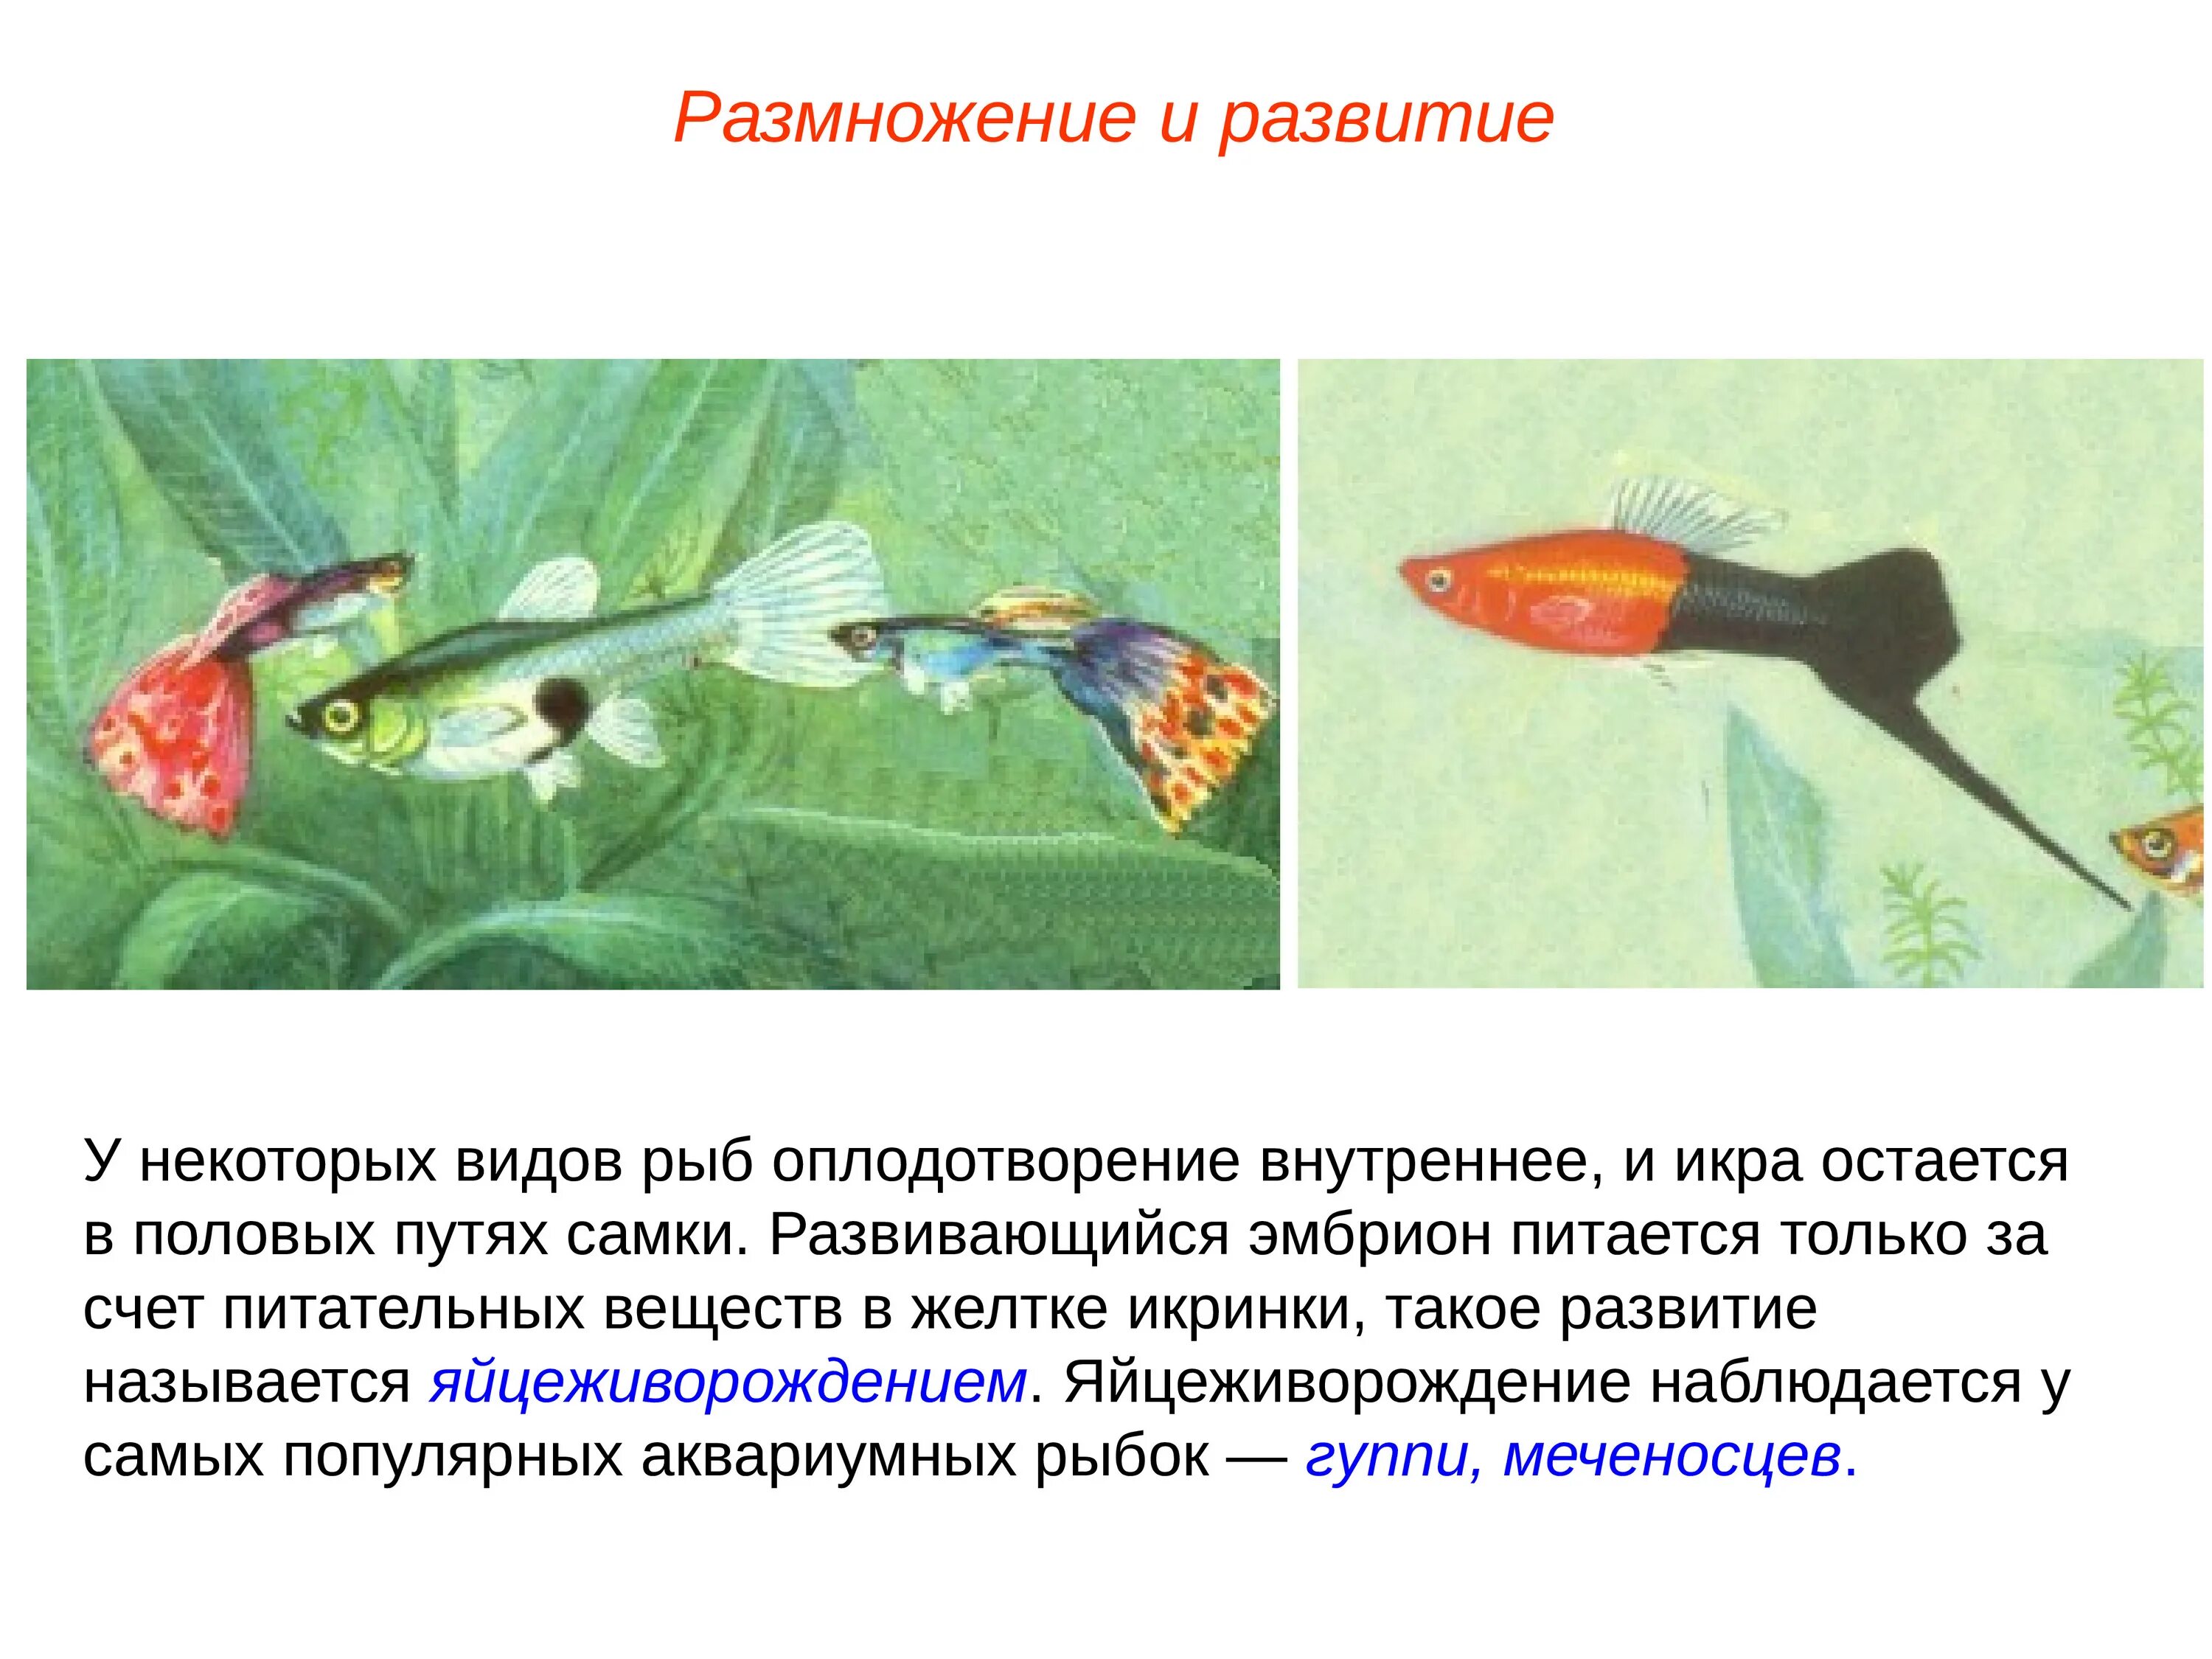 Размножение и оплодотворение у рыб. Внутреннее оплодотворение у рыб. Развитие рыб. Этапы размножения рыб. Какое оплодотворение характерно для костных рыб